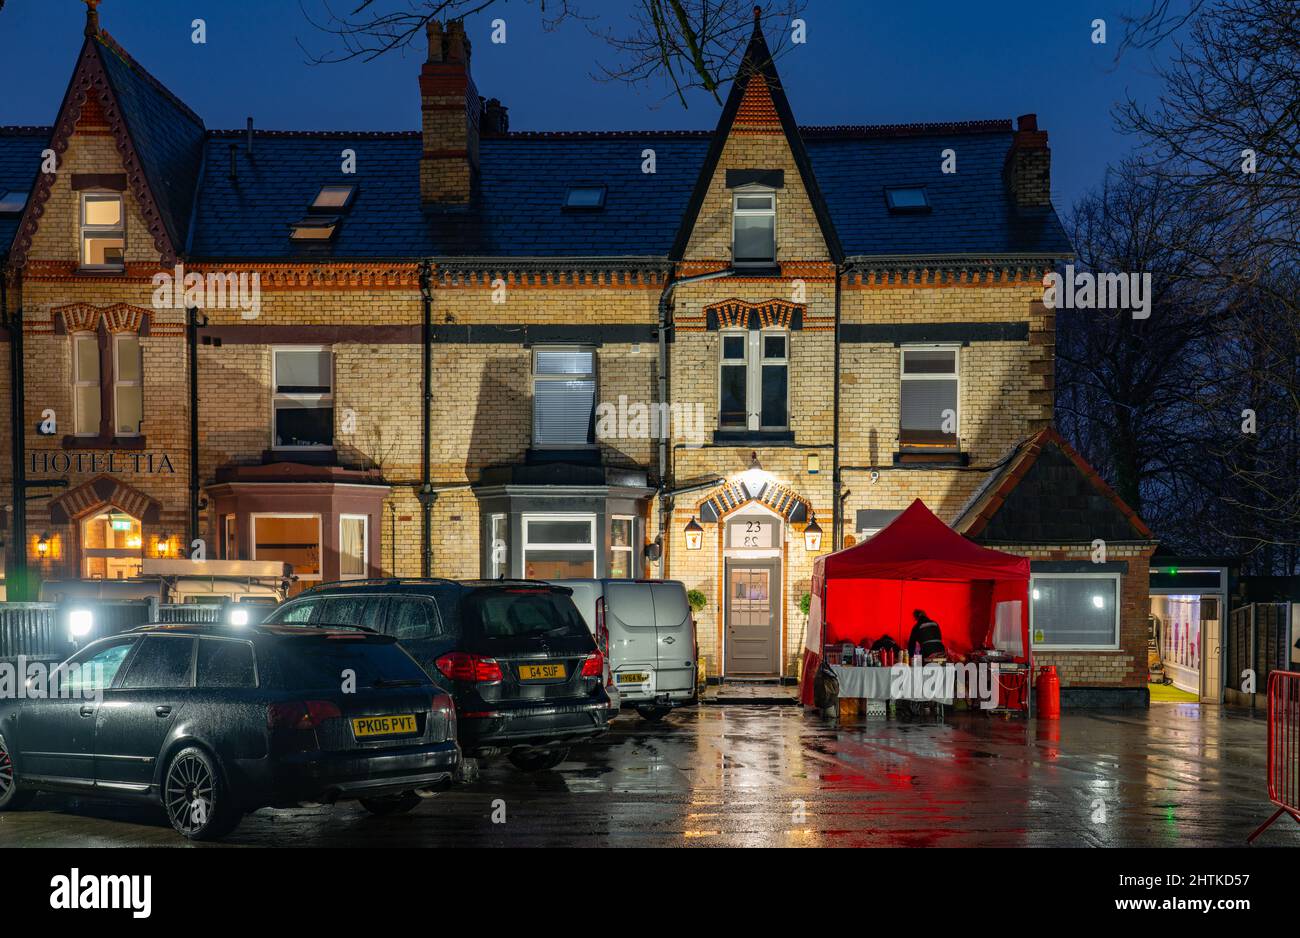 Hotel Anfield, un hotel a tema Liverpool Football Club. Immagine scattata nel dicembre 2021. Foto Stock